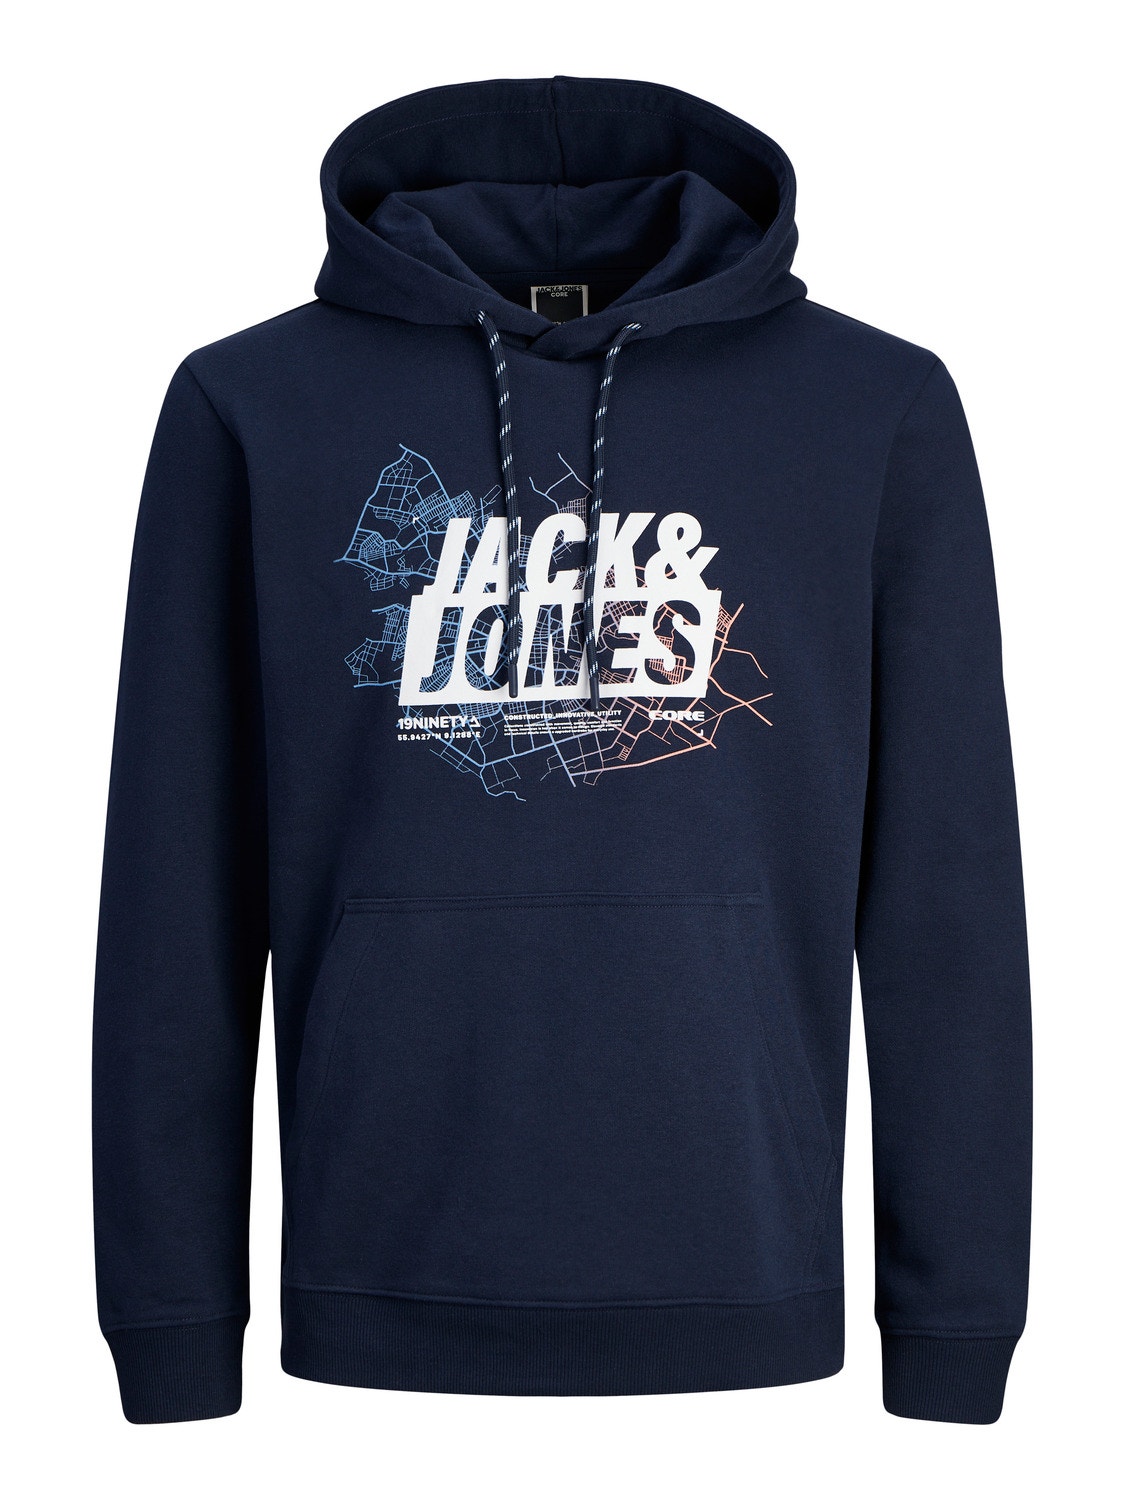 Jack & Jones Logo Hettegenser -Navy Blazer - 12252310